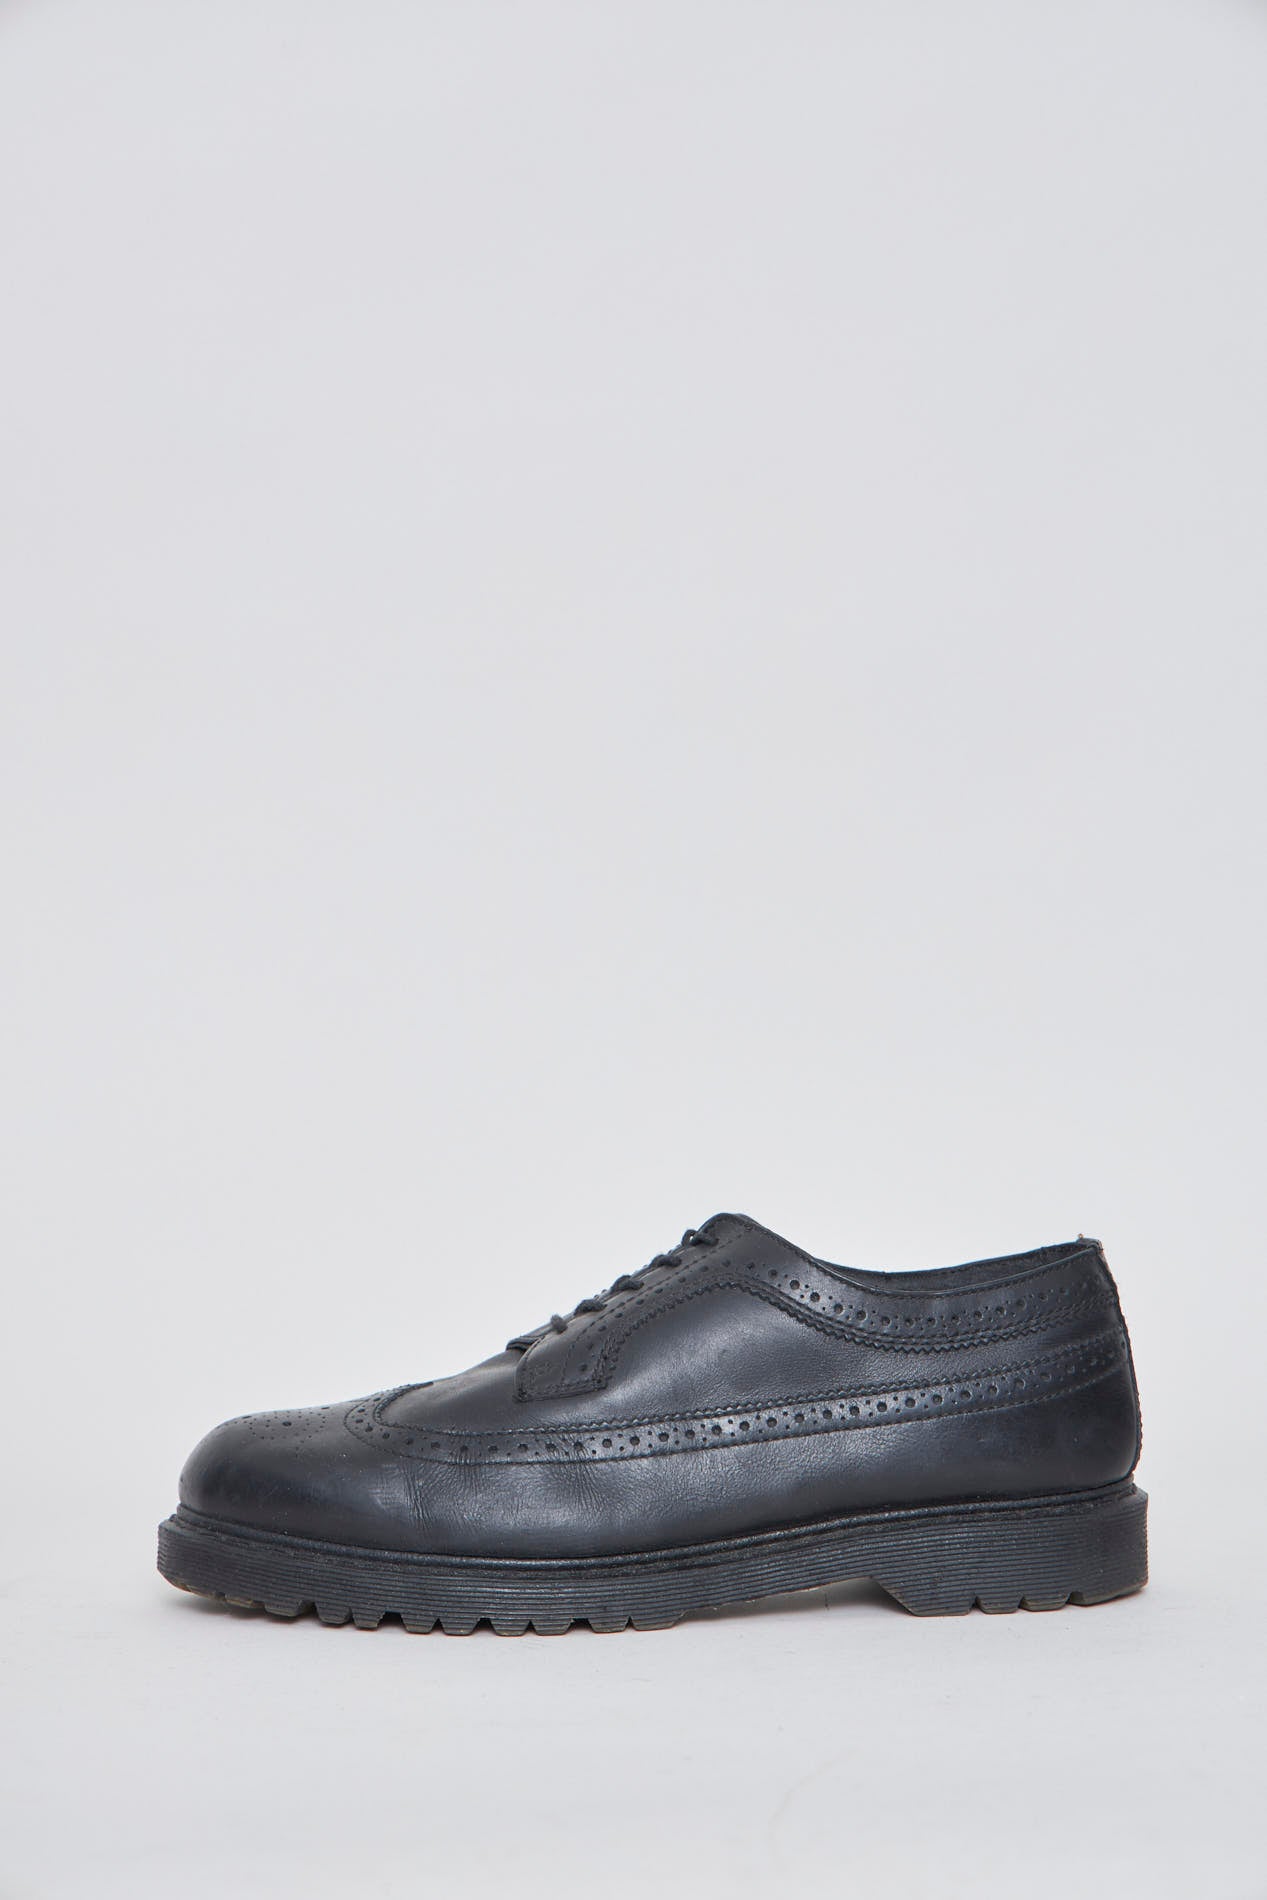 Zapato casual  negro dr martens talla 45 086